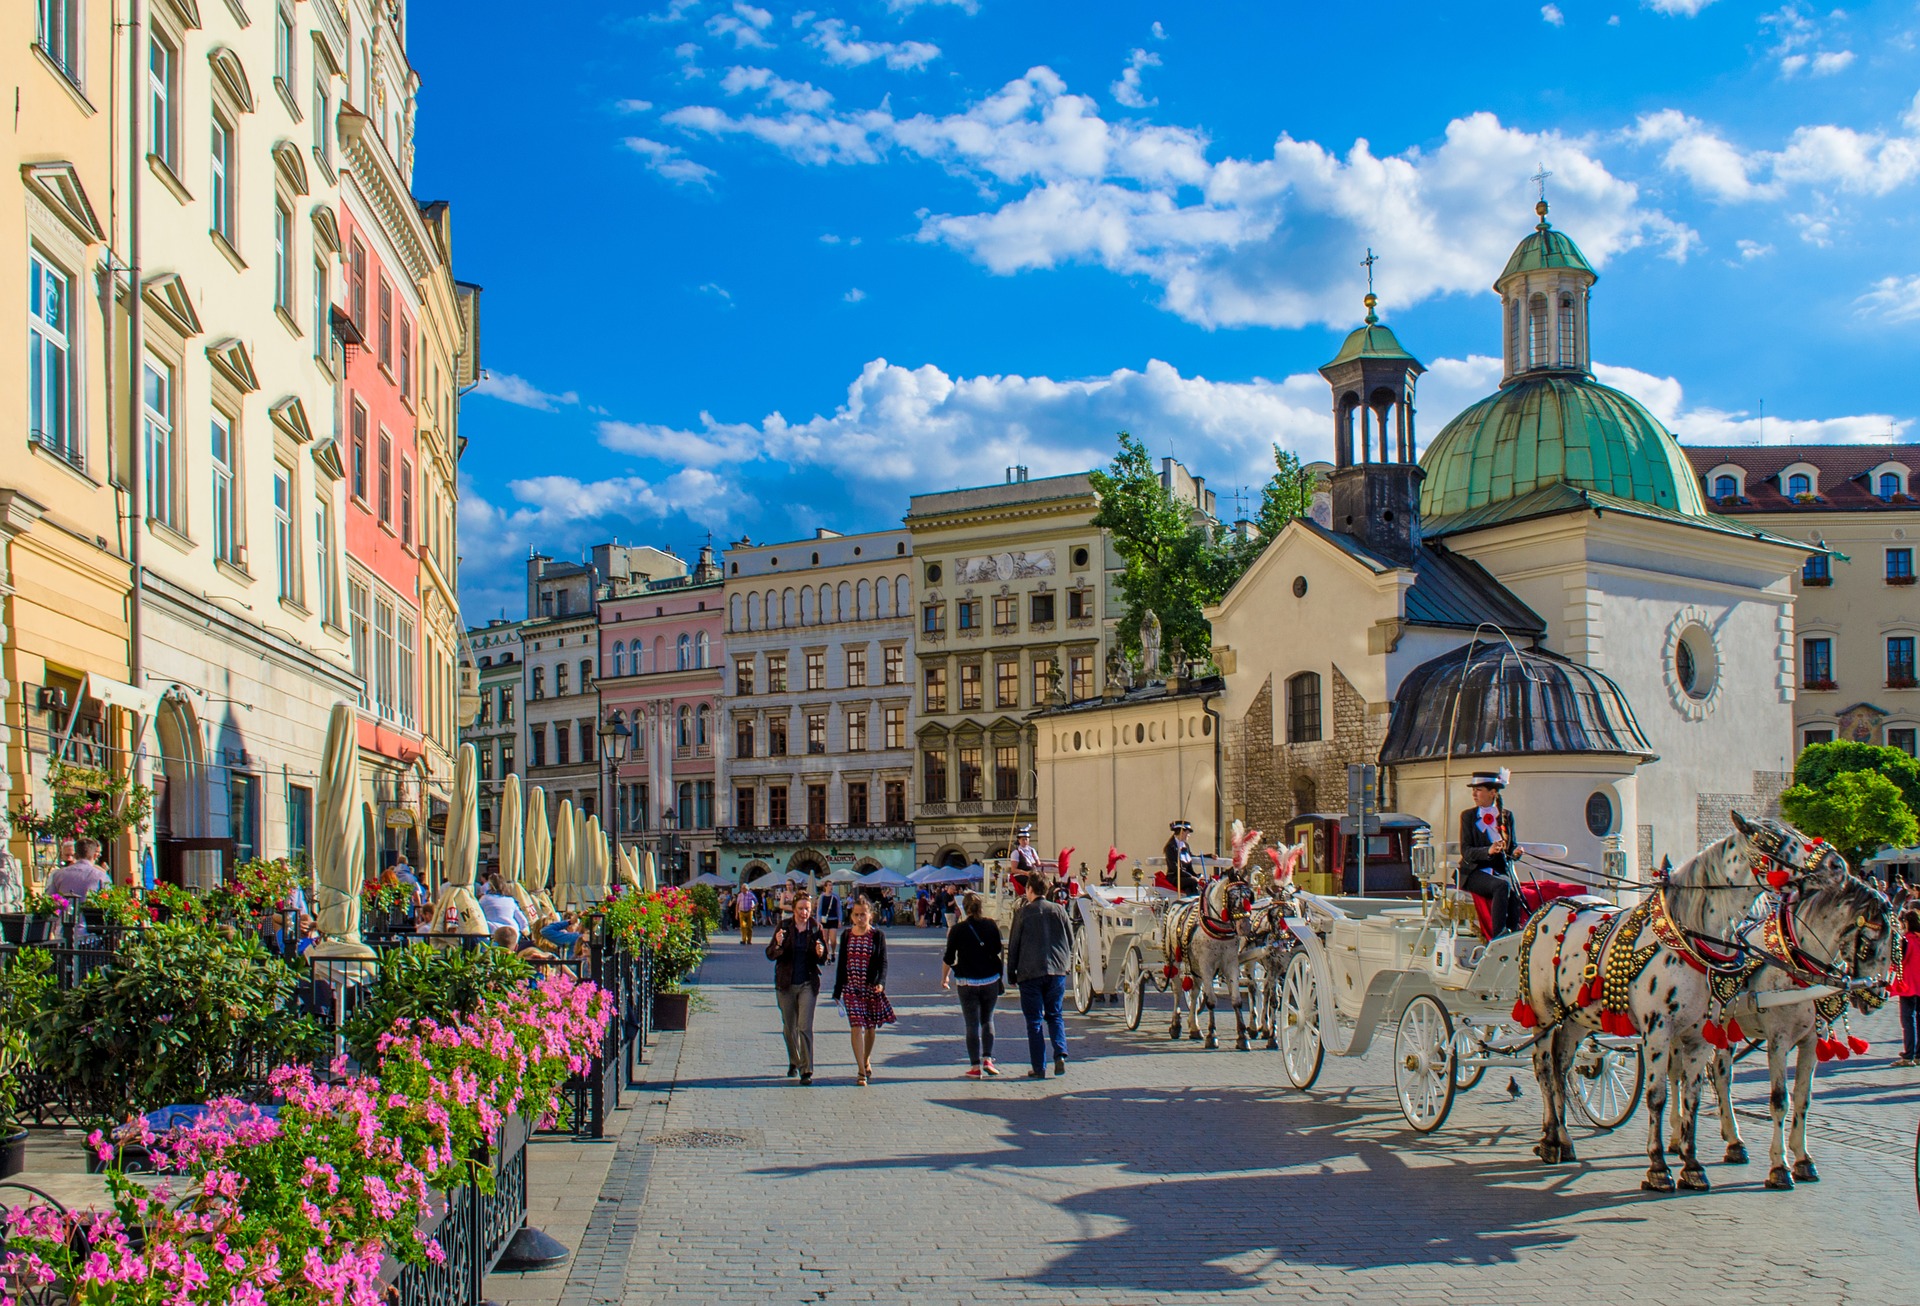 Städtereise Krakau günstig buchen ab 14,00€ die Nacht im Hotel